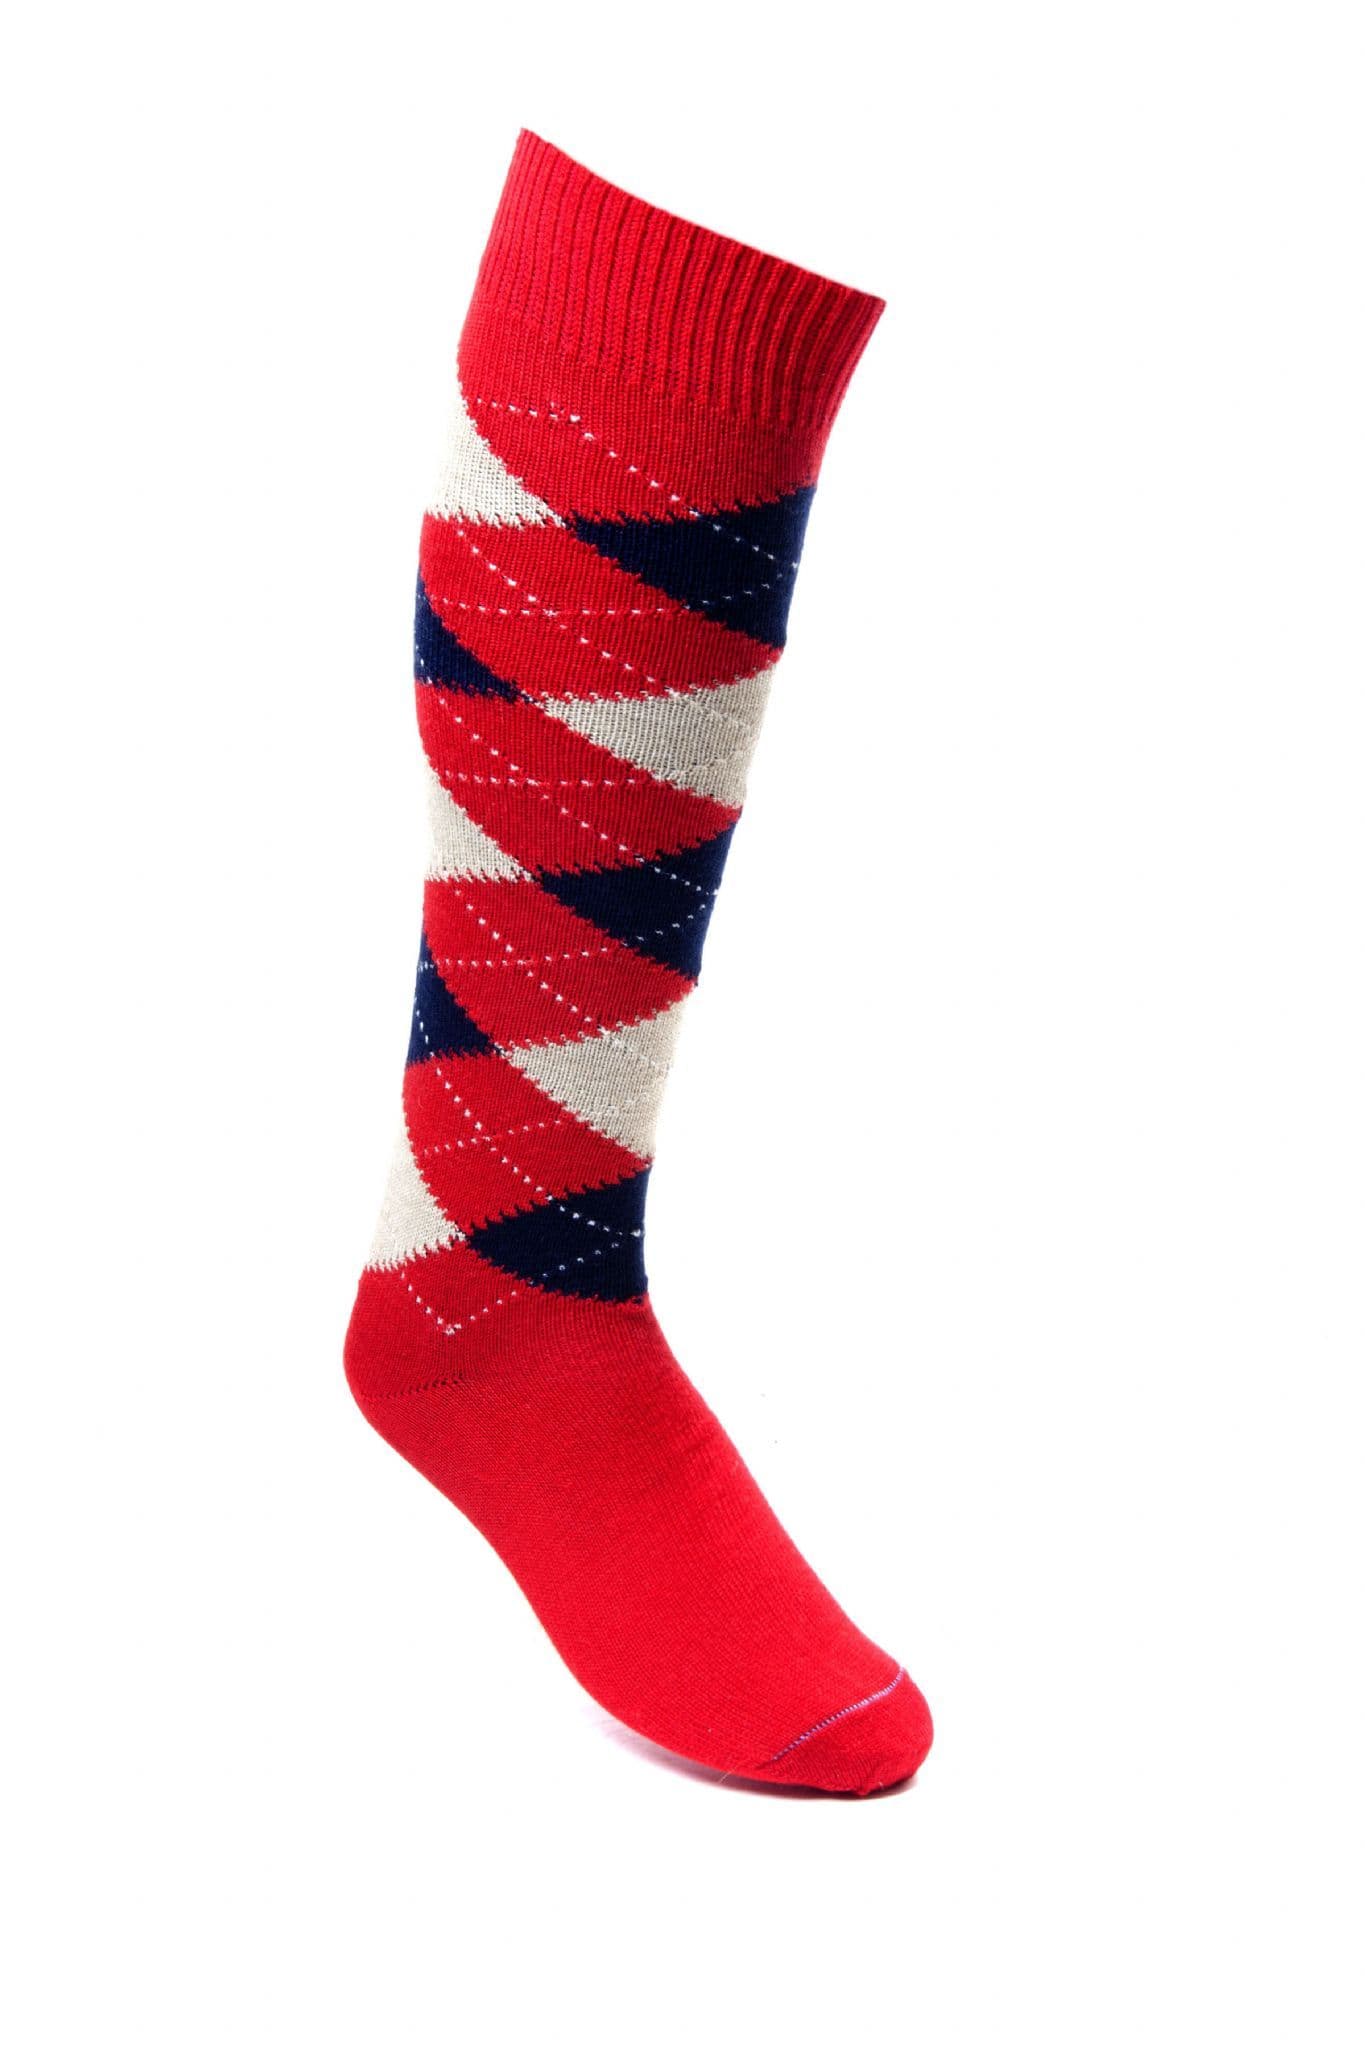 House Of Cheviot Men's Argyle Golf Socks - Bright Red